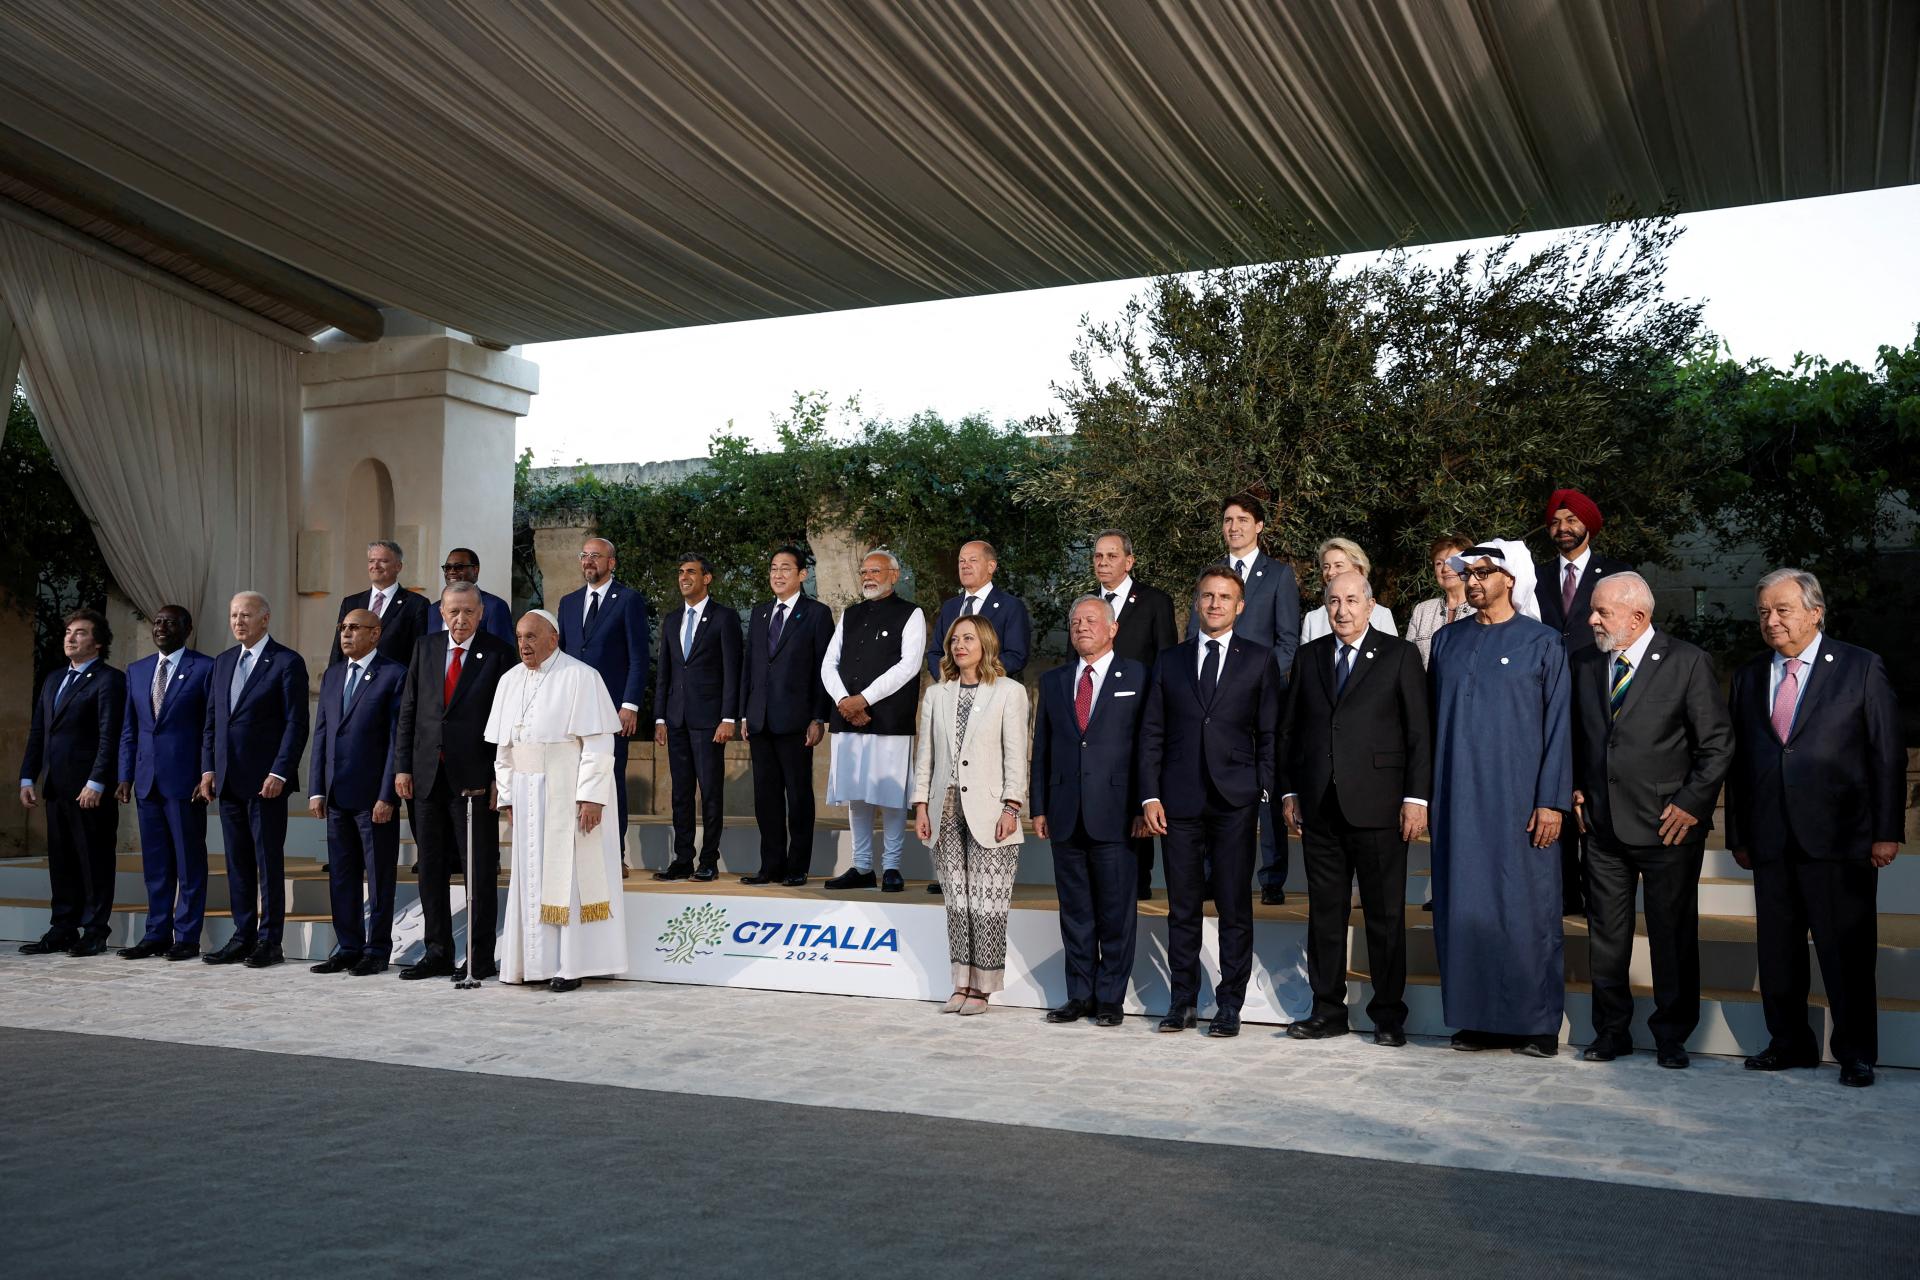 Ministri obchodu G7 sa stretli v Taliansku. Sú pripravení bojovať svojimi nástrojmi proti deformácii trhu